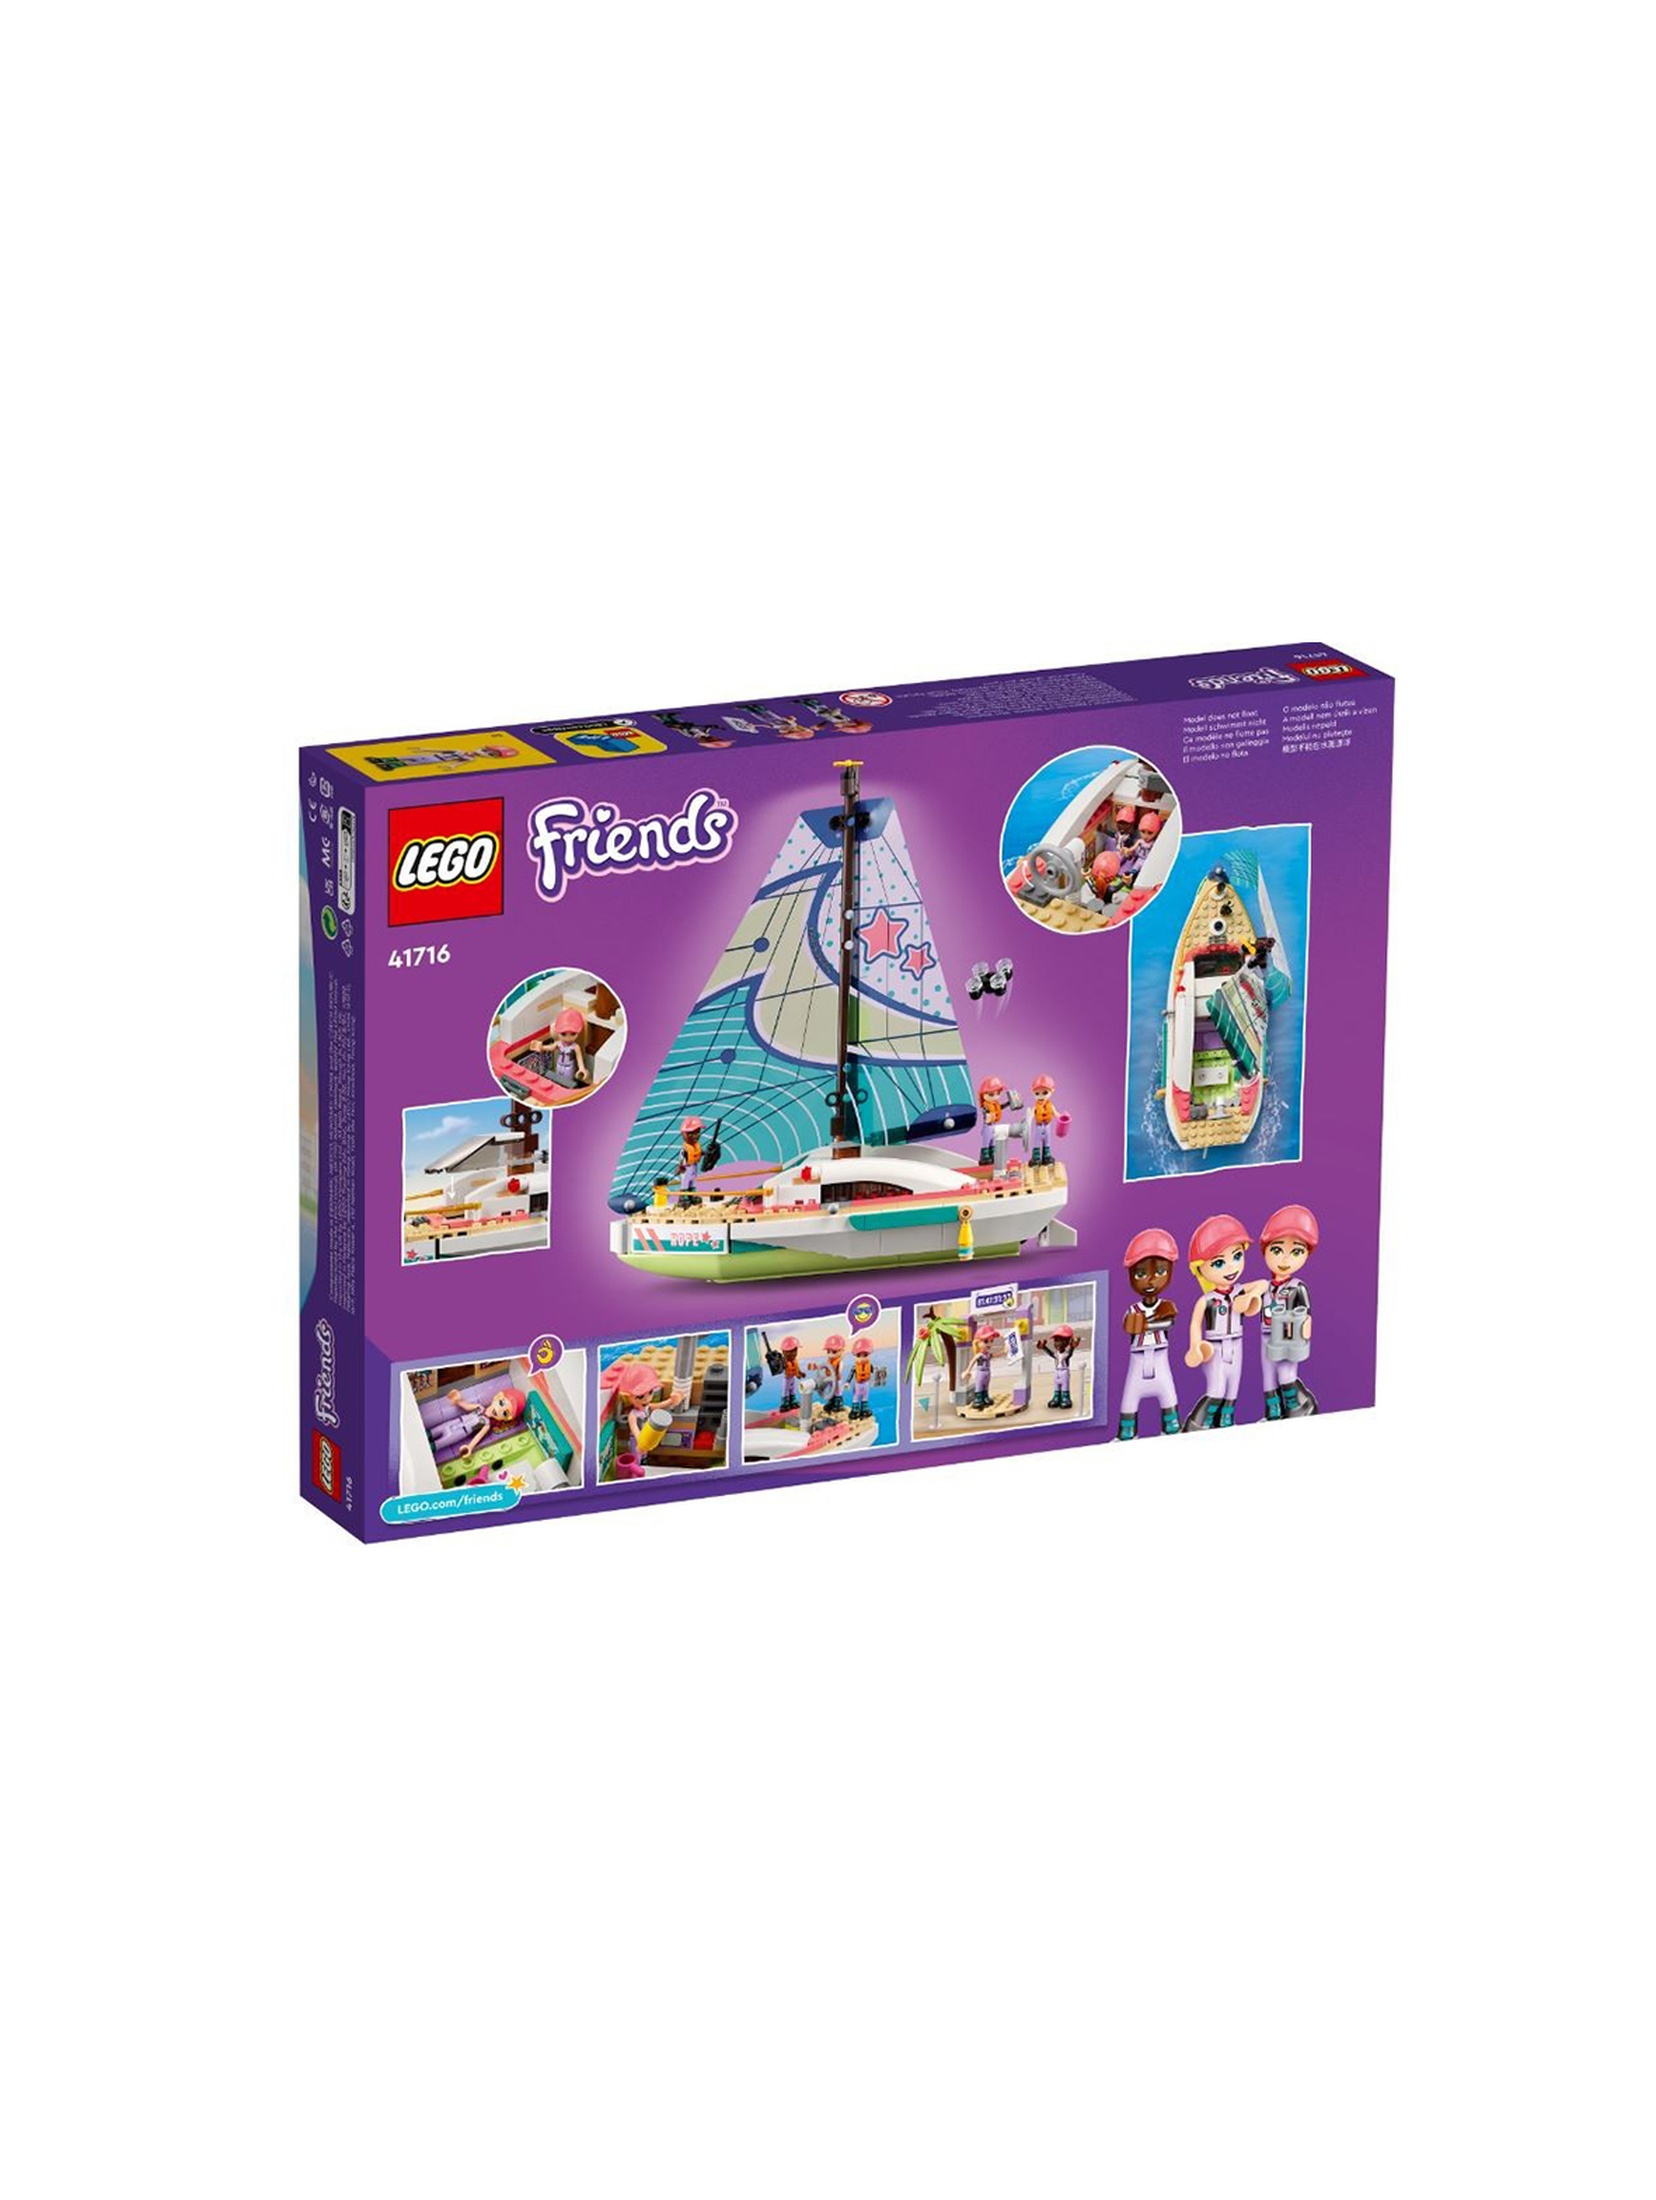 LEGO Friends - Stephanie i przygoda pod żaglami 41716 - 304 elementy, wiek 7+